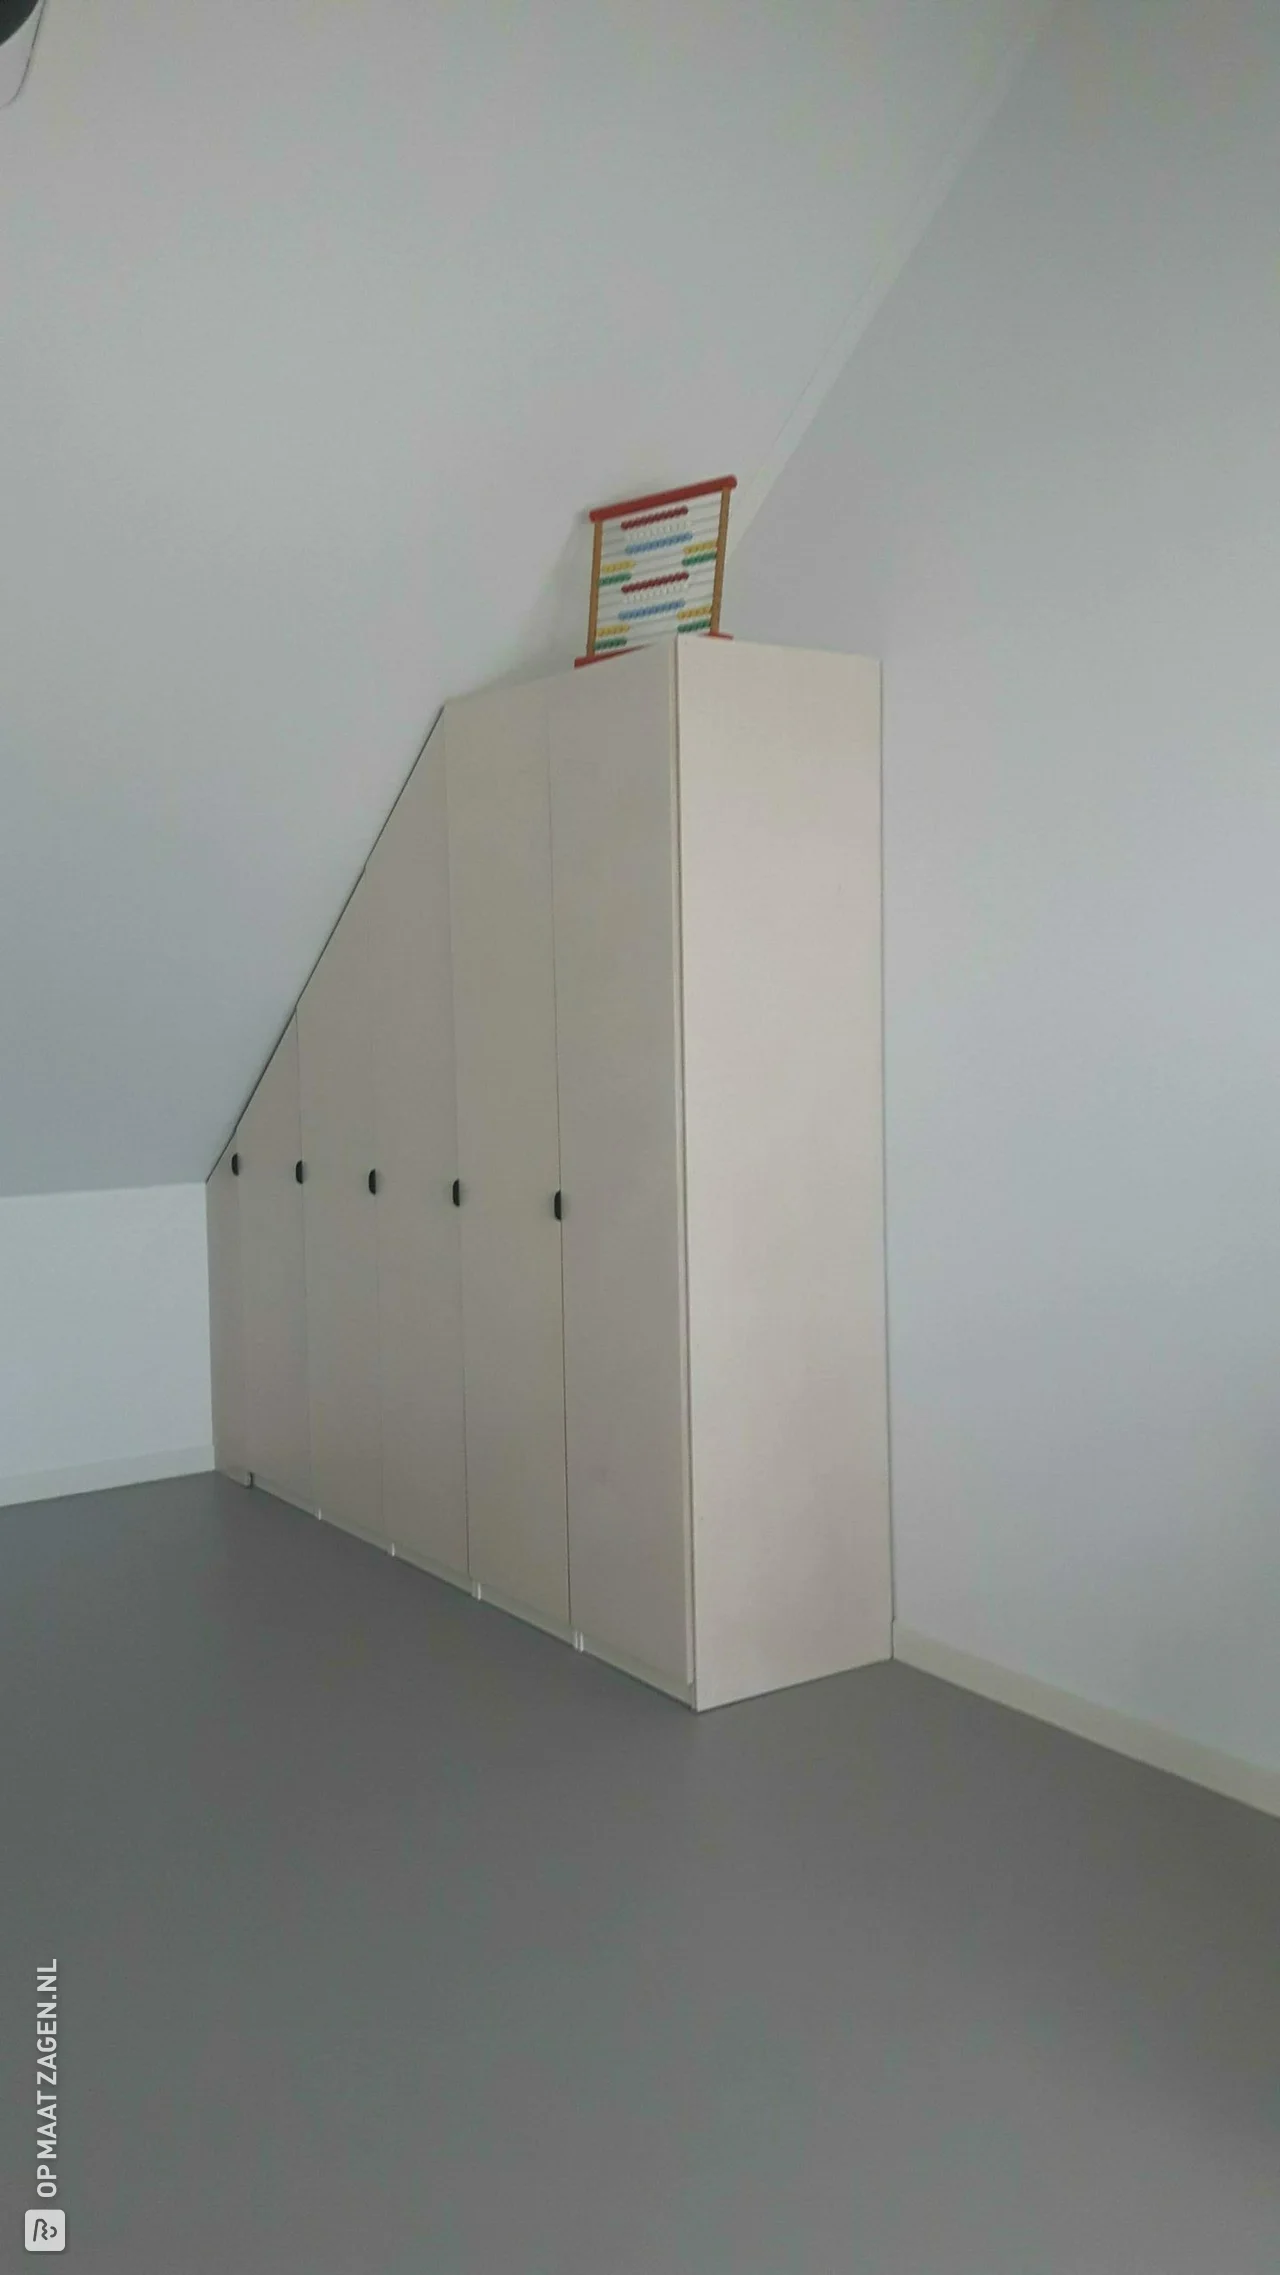 kastdeuren maken voor bestaande kledingkast | OPMAATZAGEN.nl